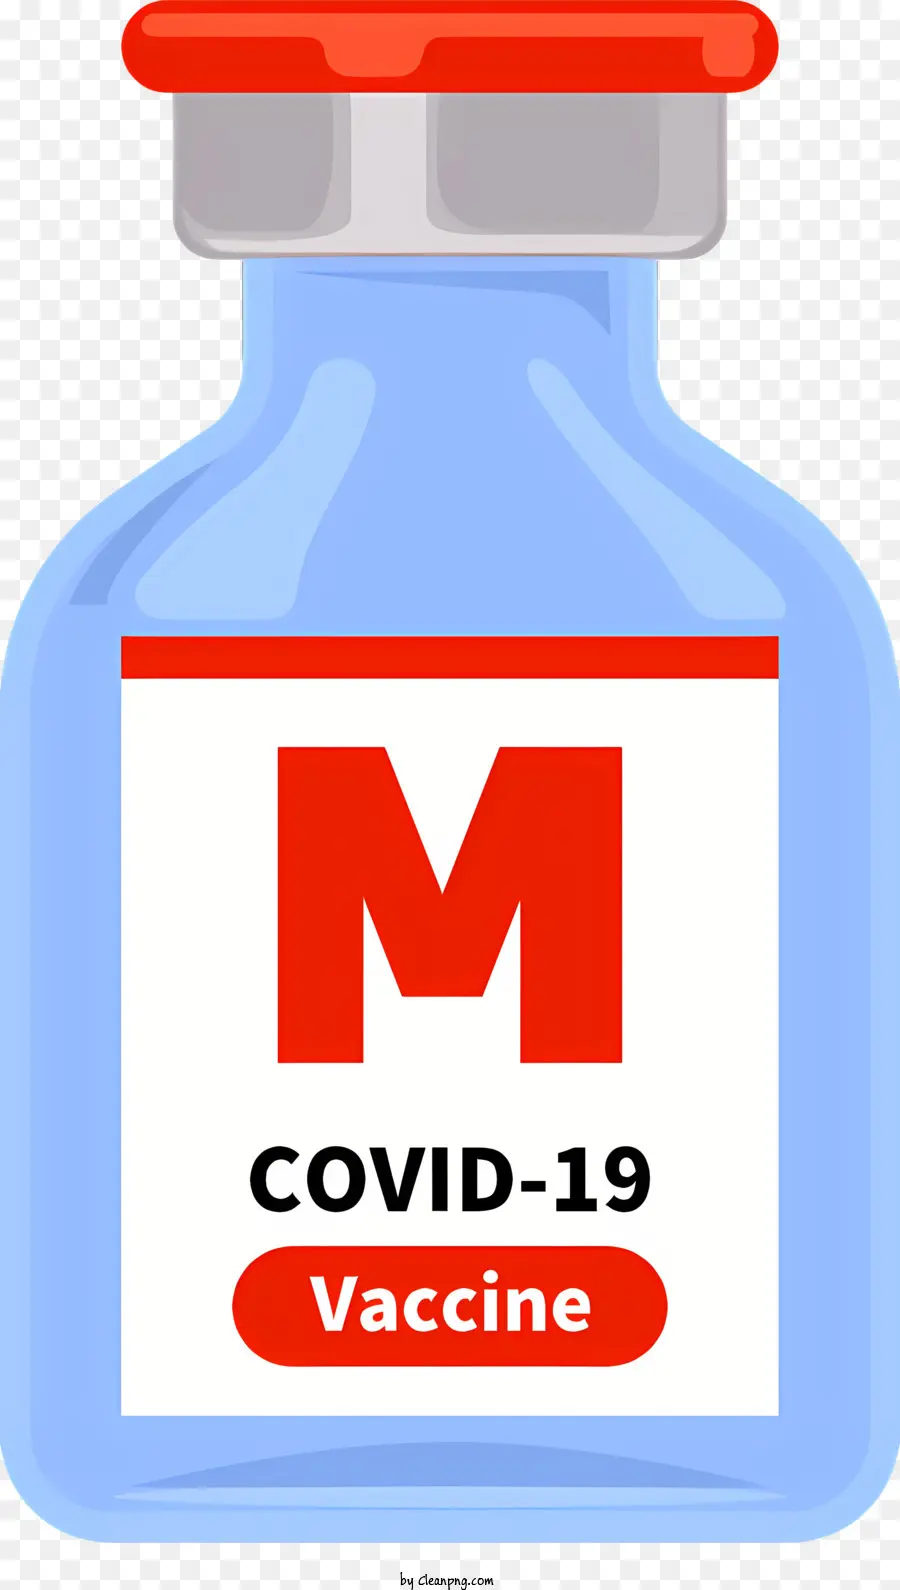 medizinischer Covid-19-Impfstoff-Cobra-Impfstoff verhindern Covid-19 Atemwegserkrankungen - Cobra-Impfstoff zur Verhinderung von Covid-19 beim Menschen